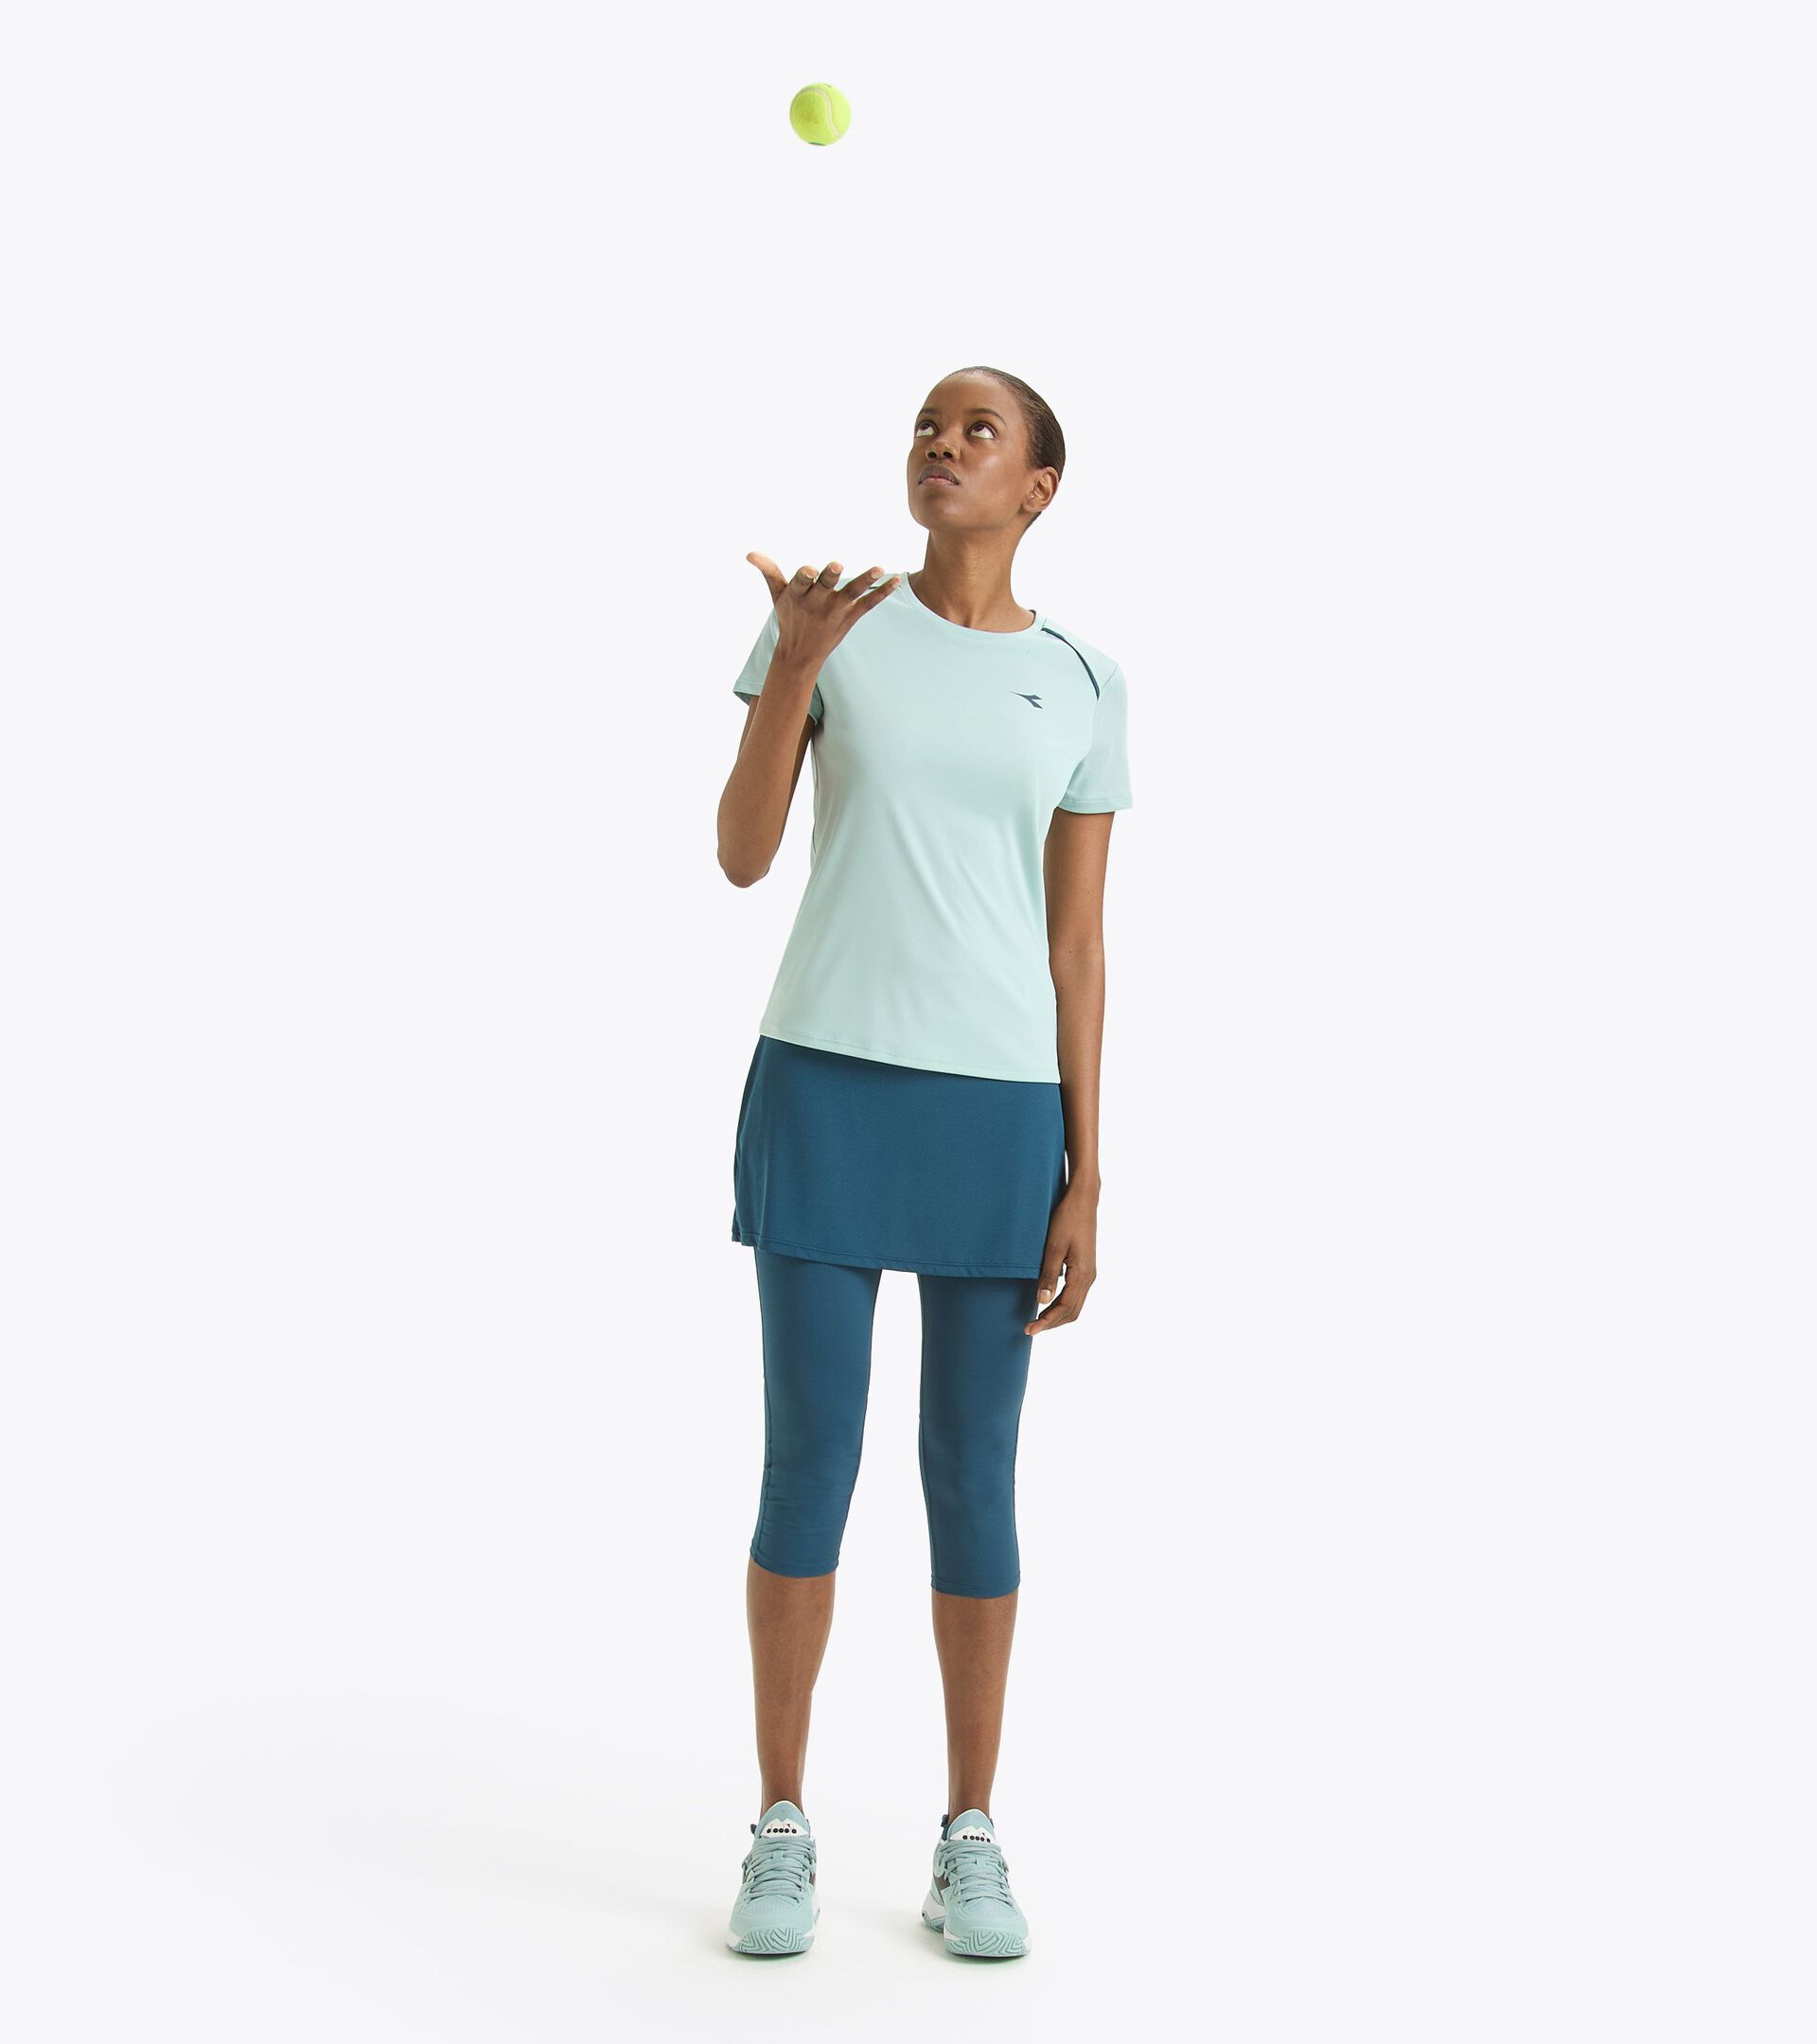 Jupe de tennis avec leggings 3 / 4 - Femme L. POWER SKIRT LEGION BLEU - Diadora